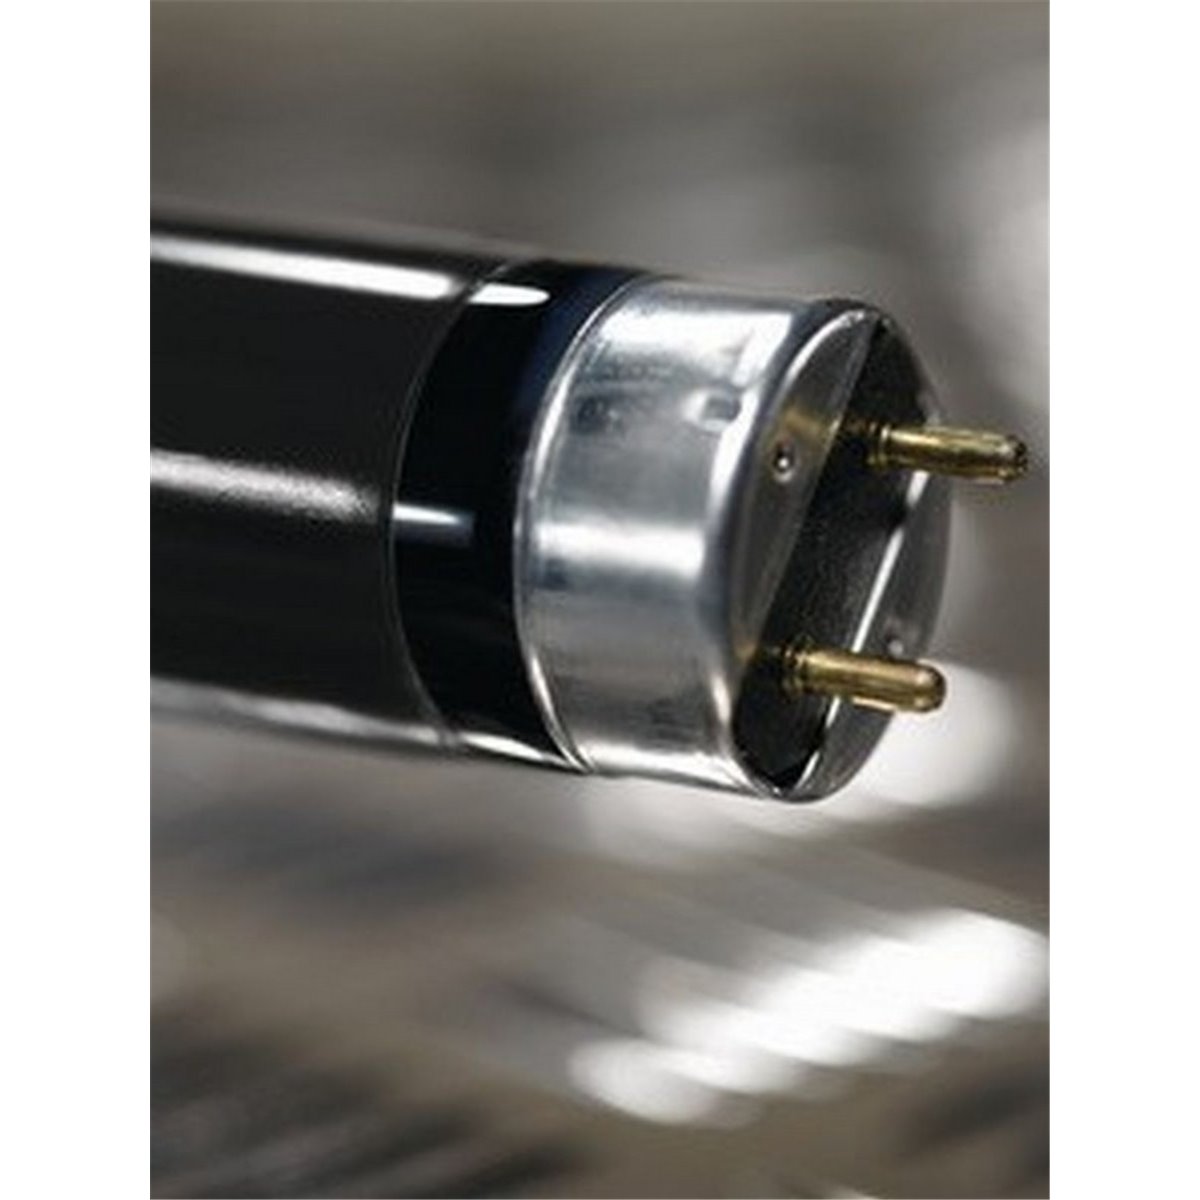 Heat shrinkable tubing 2:1 TK20-1,6/0,8-PVDF-CL 25pcs. HellermannTyton